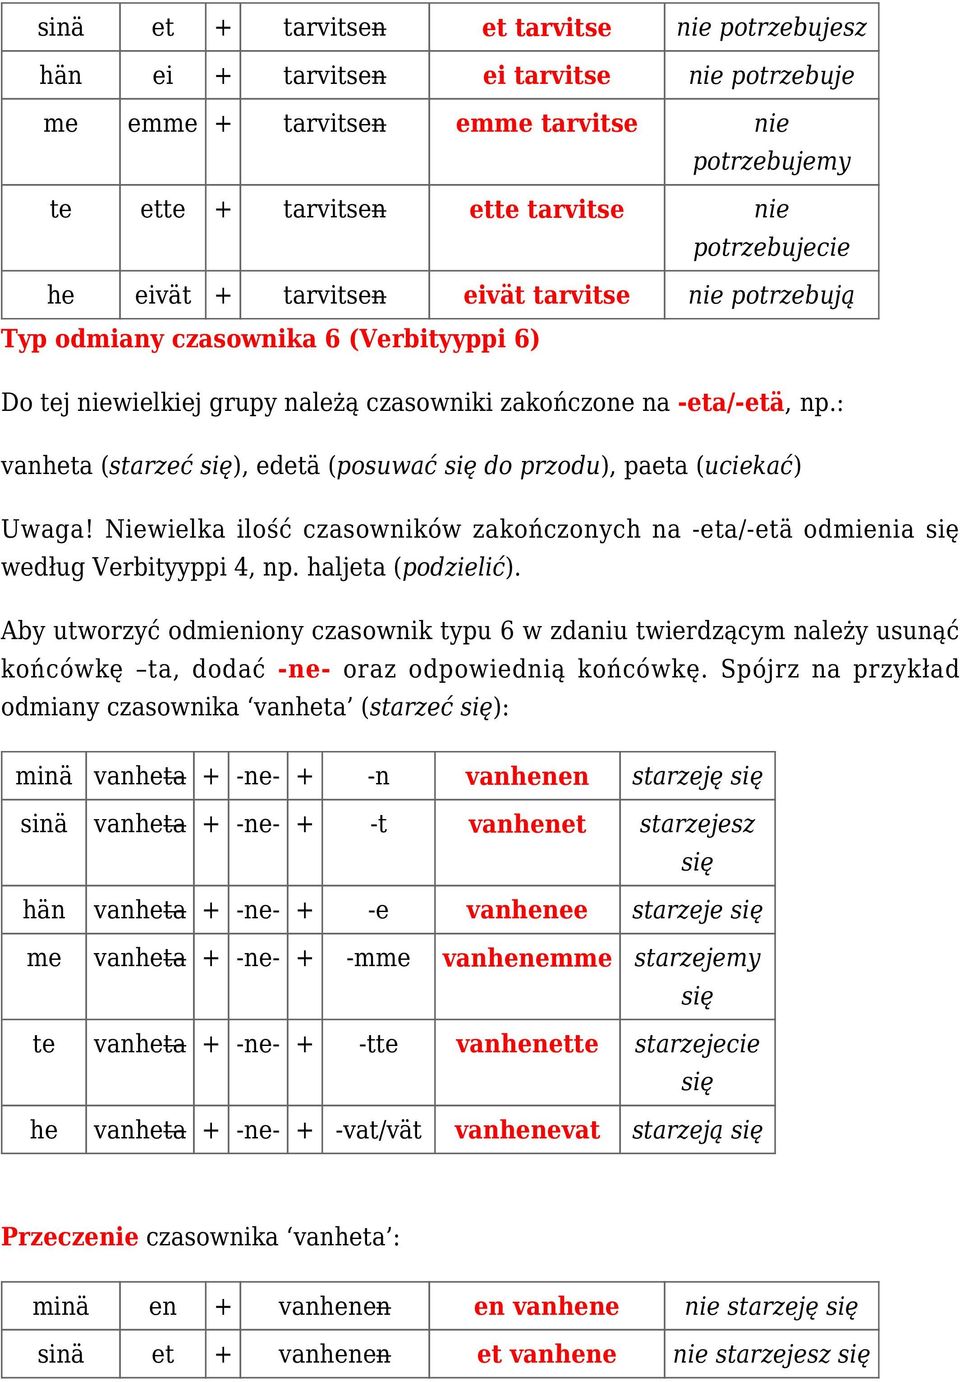 : vanheta (starzeć ), edetä (posuwać do przodu), paeta (uciekać) Uwaga! Niewielka ilość czasowników zakończonych na -eta/-etä odmienia według Verbityyppi 4, np. haljeta (podzielić).